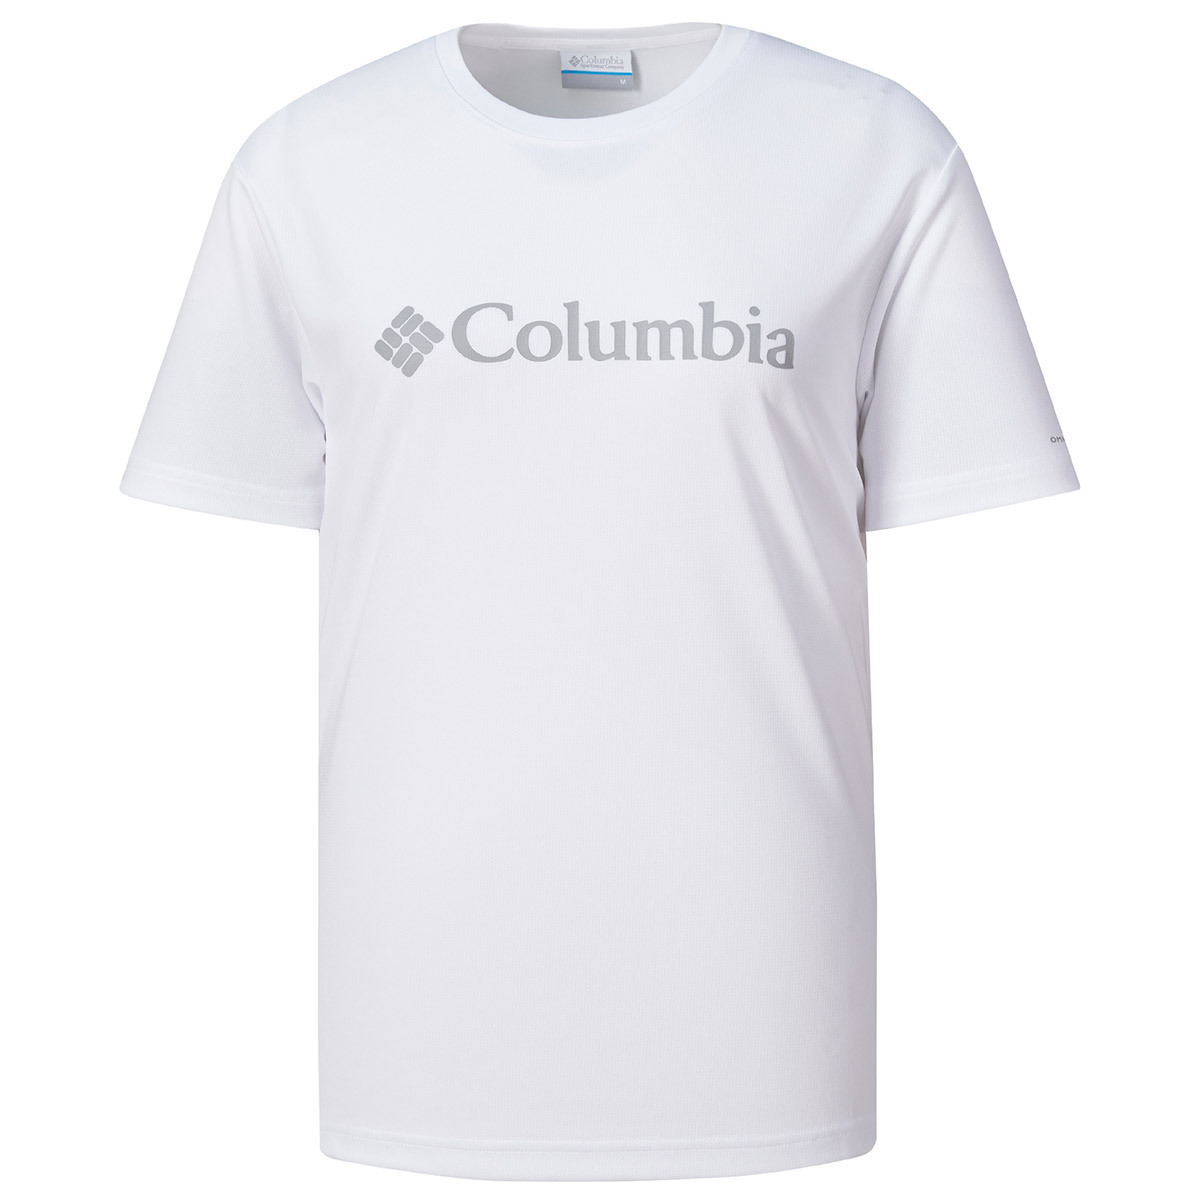 컬럼비아 남성 반소매 티셔츠 - 화이트, XXL